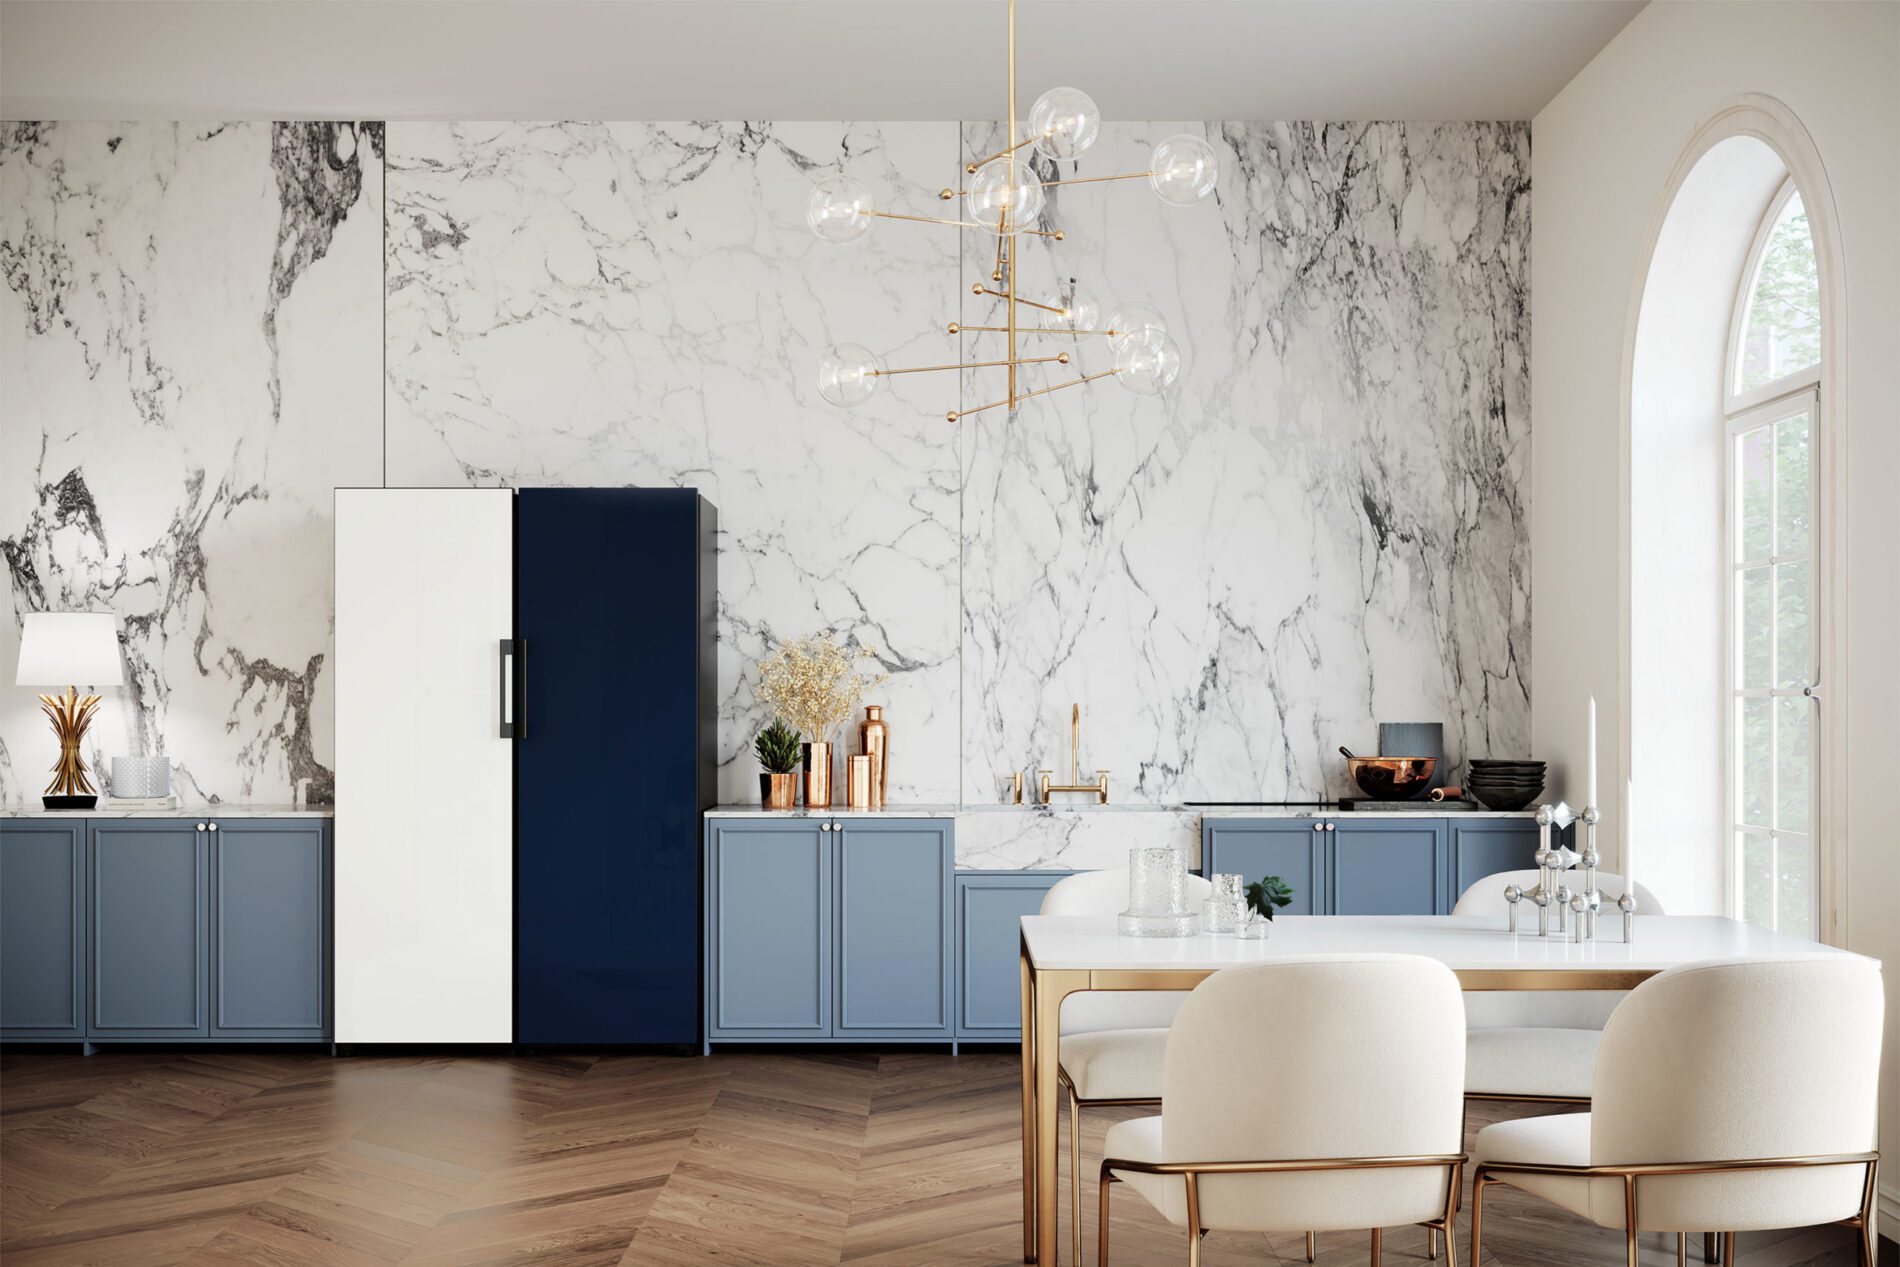 Agrupe os módulos como quiser e escolha as cores que desejar: desse modo, o refrigerador Bespoke se adapta completamente à personalidade do morador e ao estilo da cozinha. | Foto: Divulgação